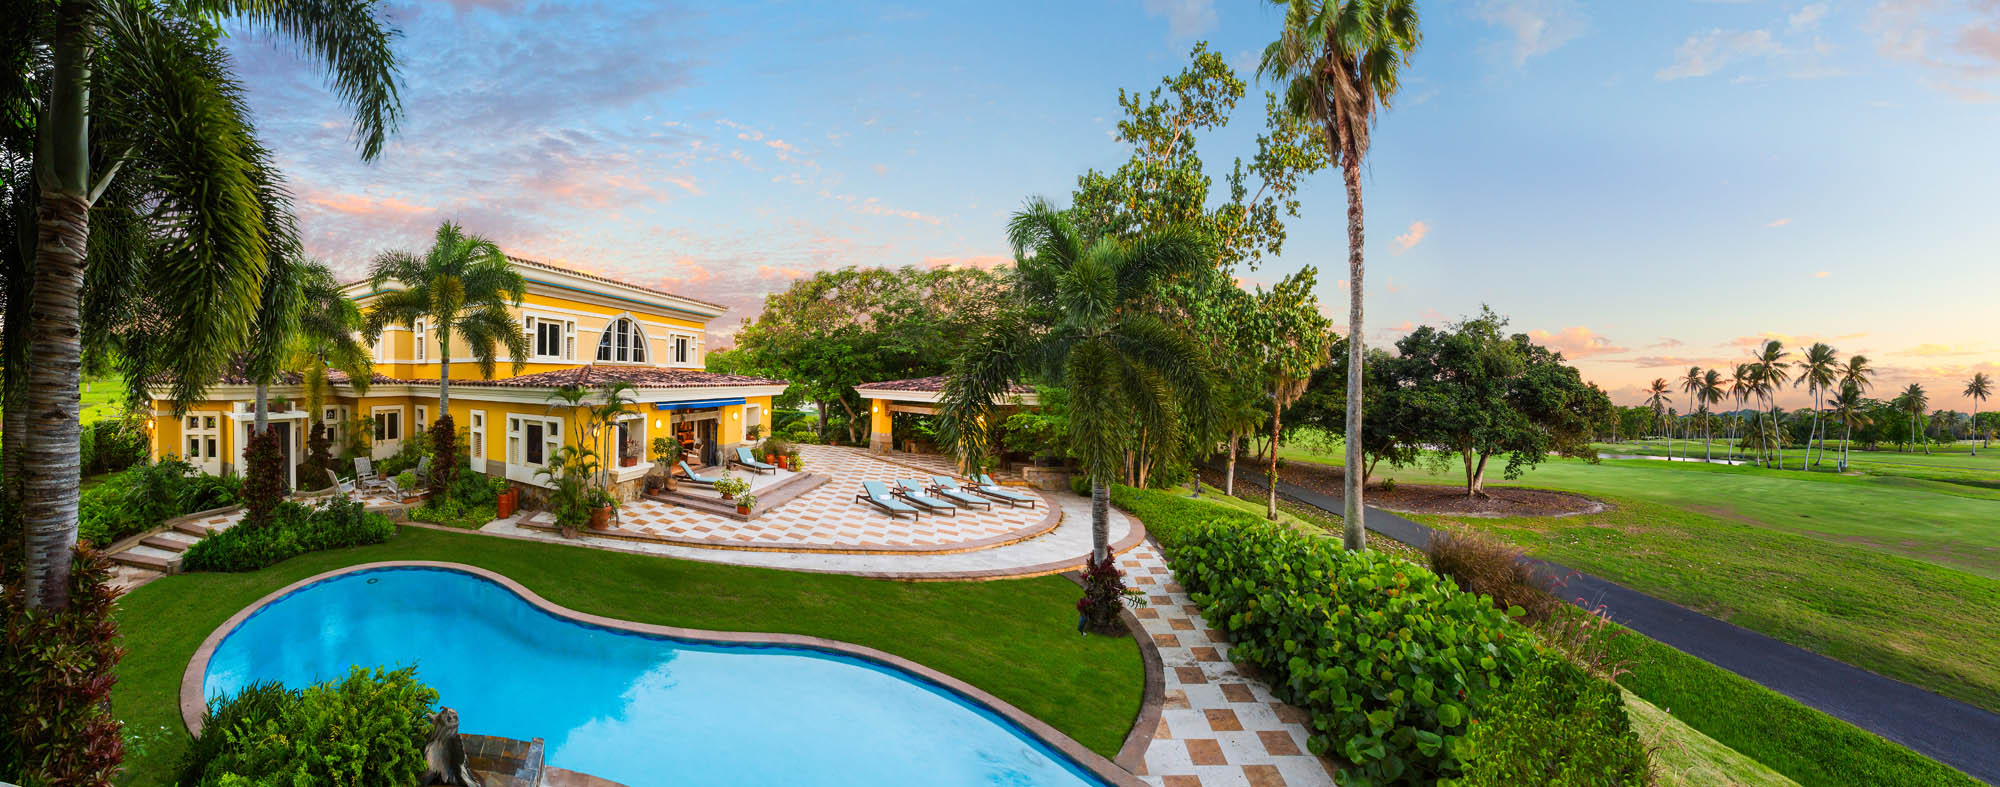 Puerto_Rico-Dorado_Beach-Ritz_Carlton_Reserve-Resort-Residence-Villa_Del_Rocio-Exterior